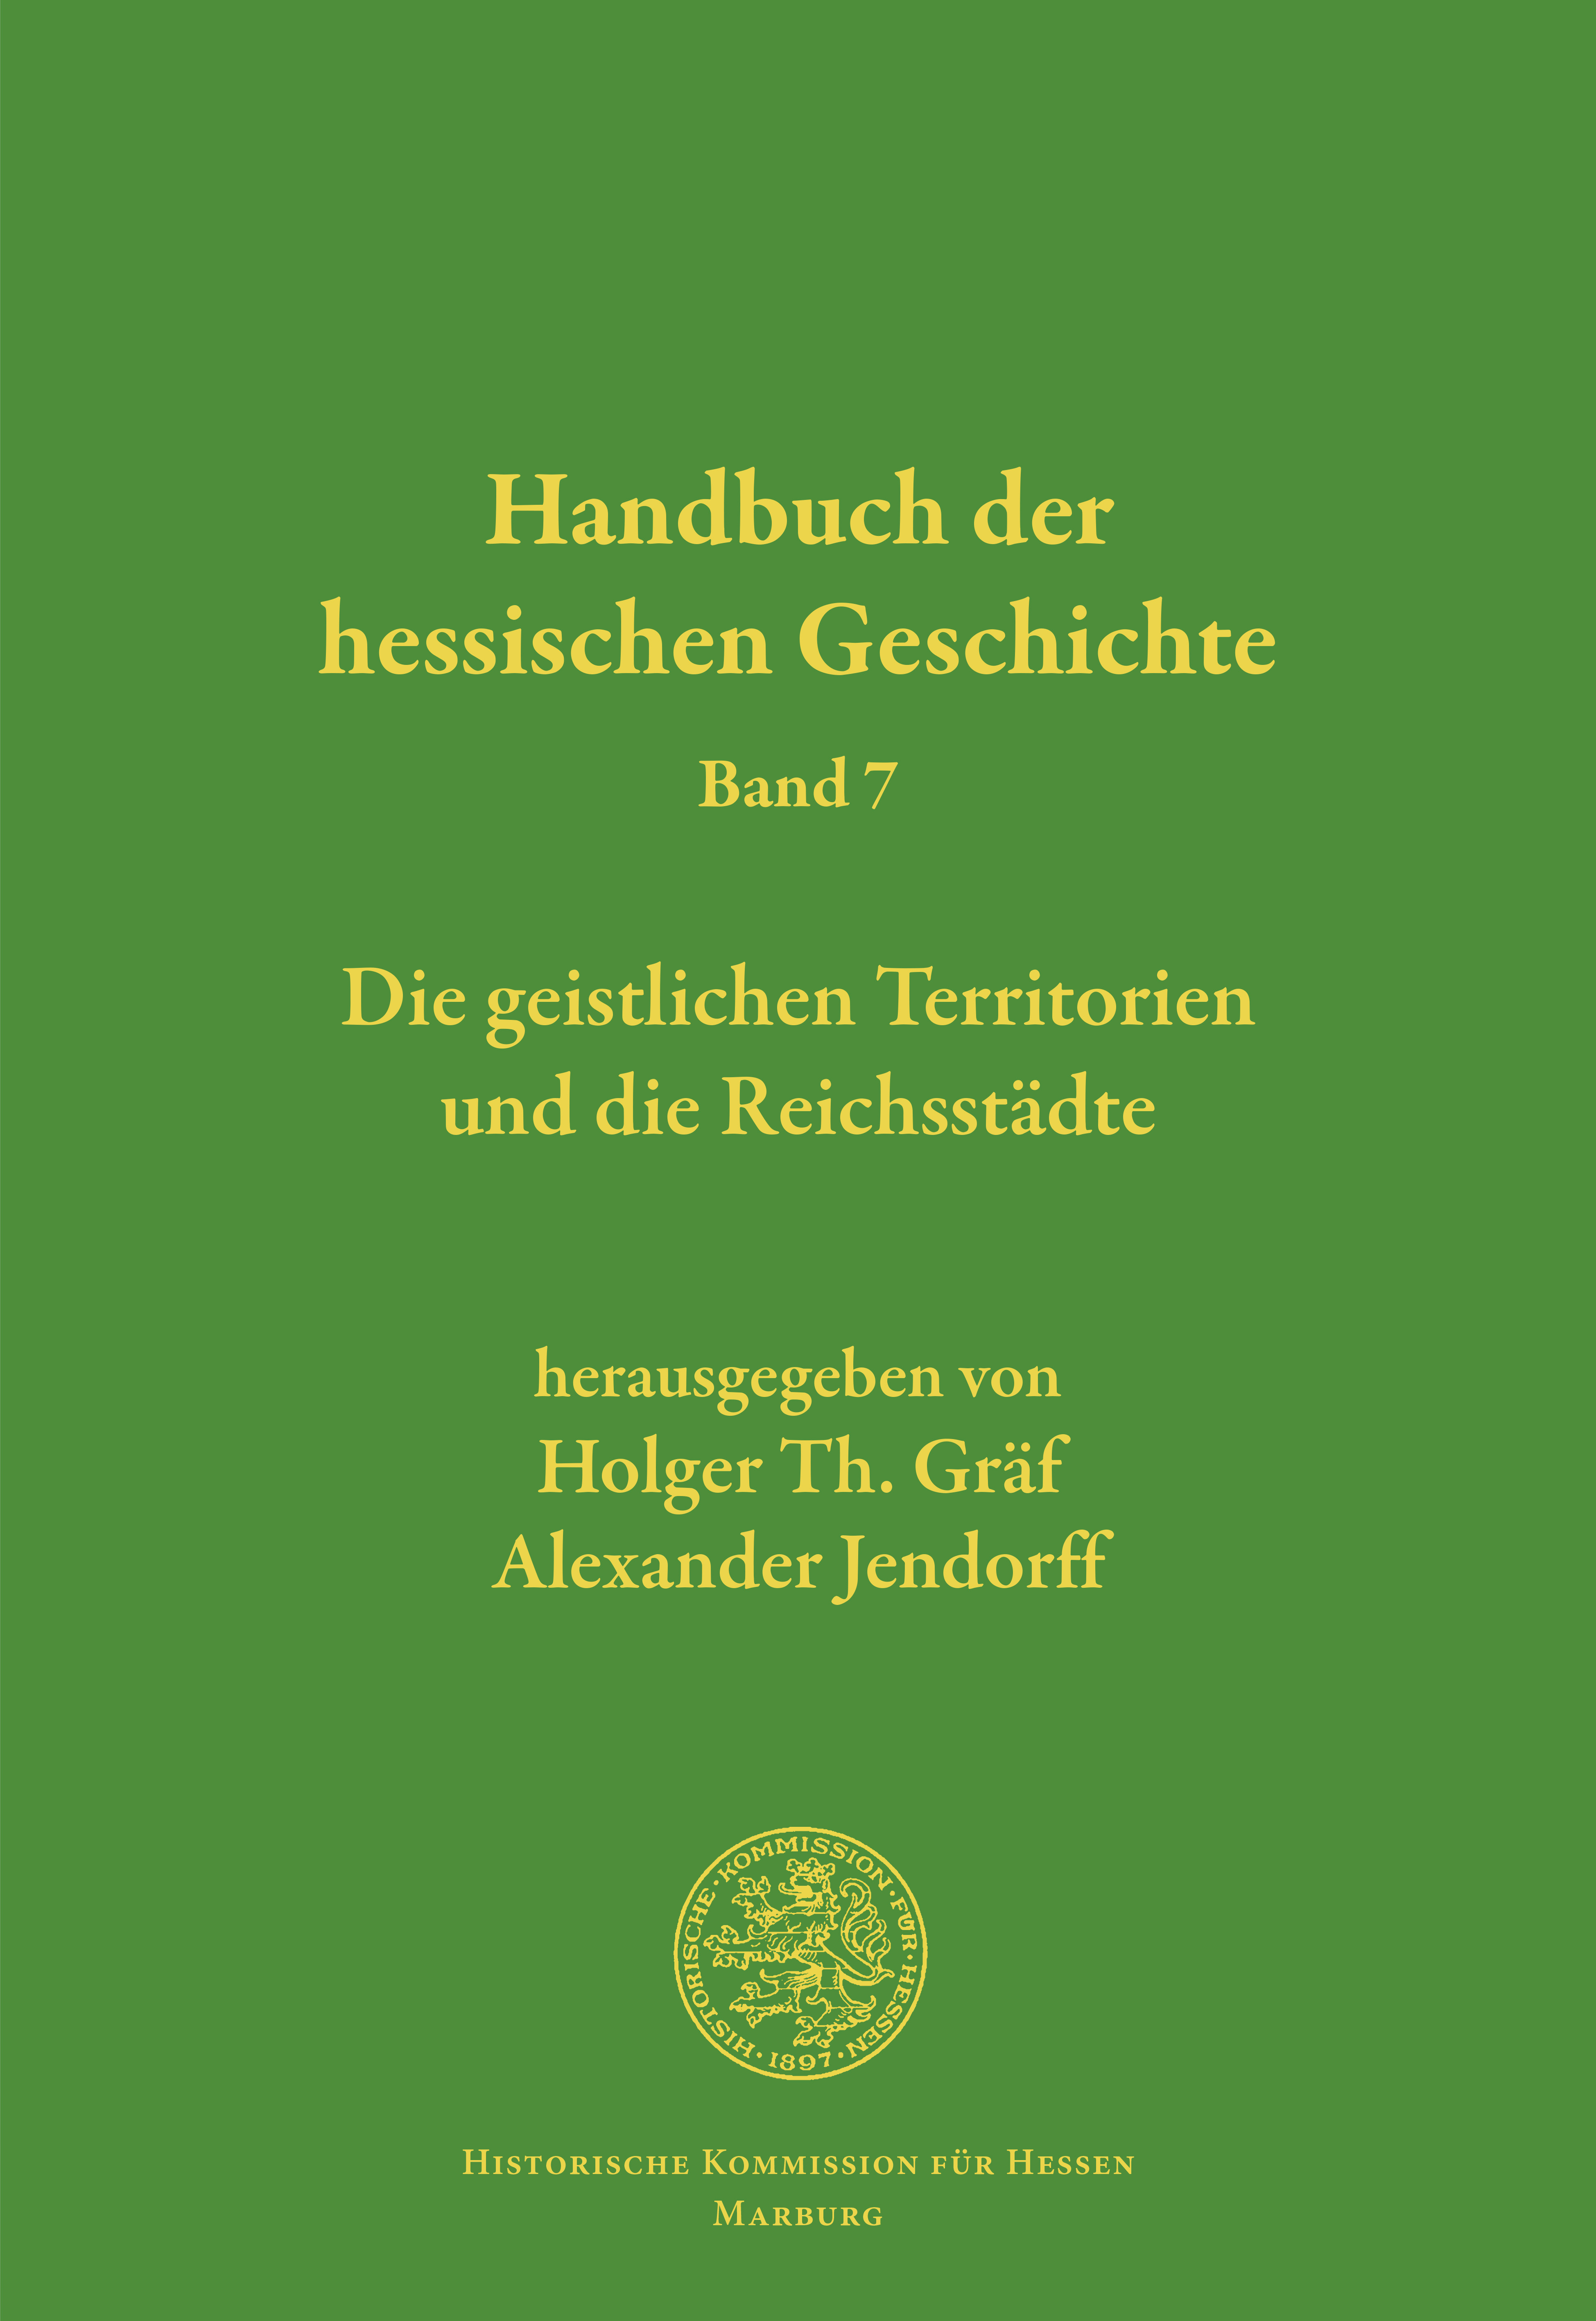 Handbuch der hessischen Geschichte, Band 7: Die geistlichen Territorien und die Reichsstädte